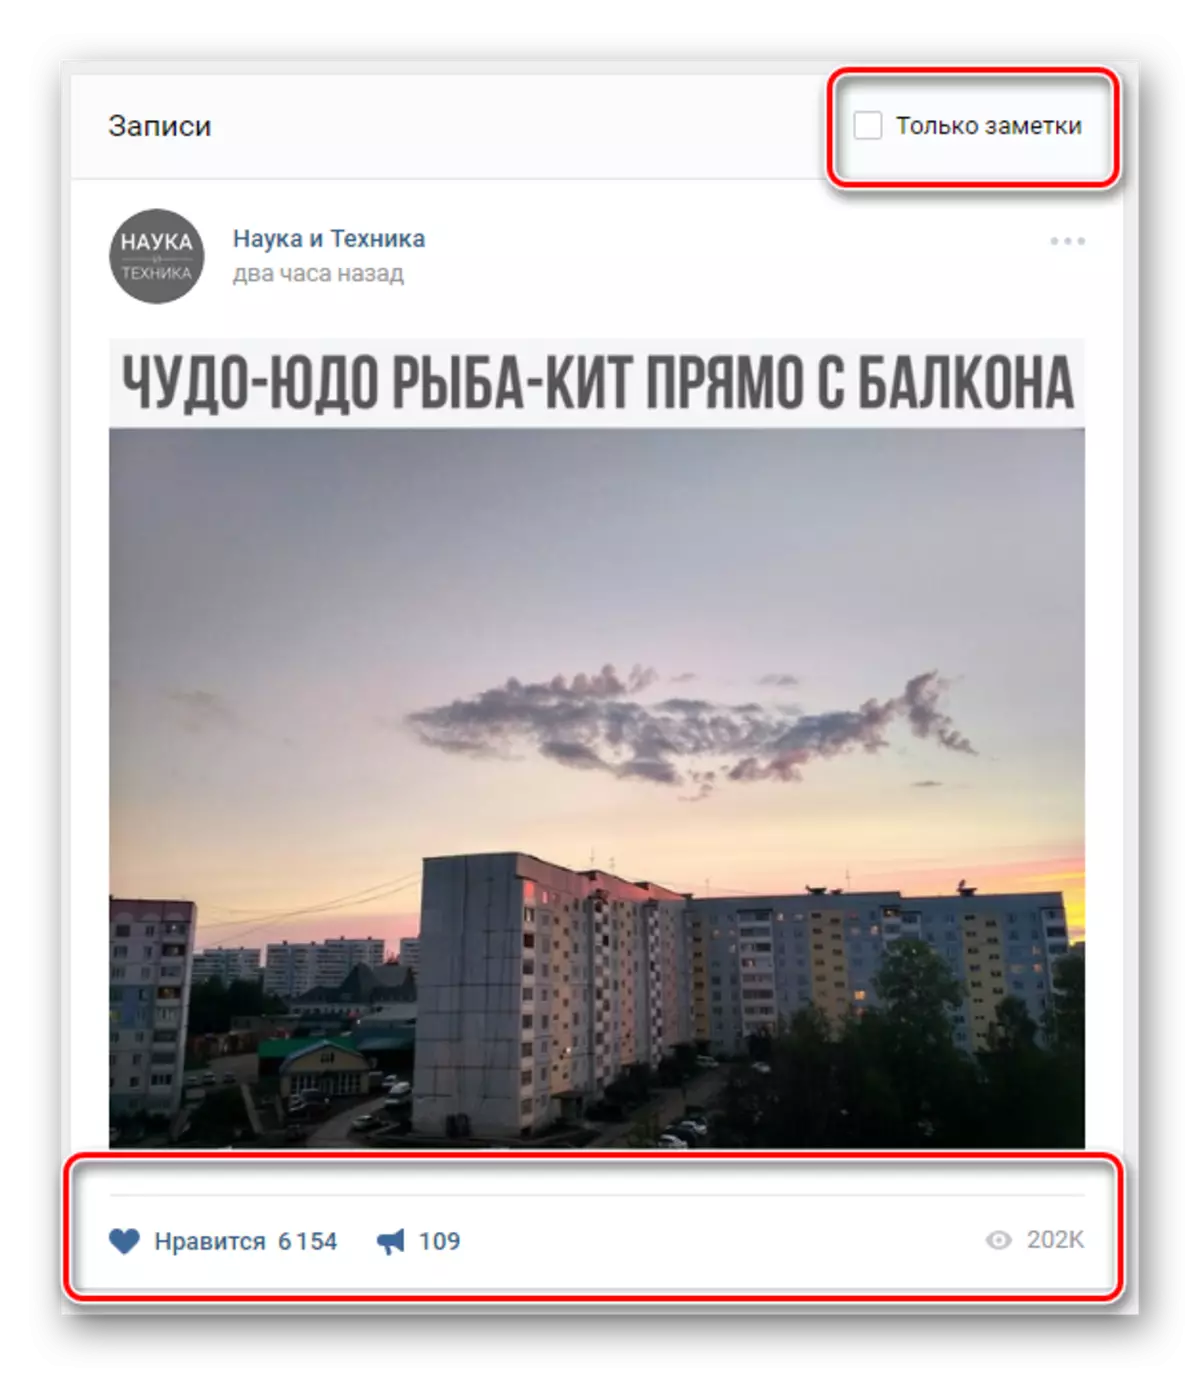 Cari entri jarak jauh di bookmark vkontakte